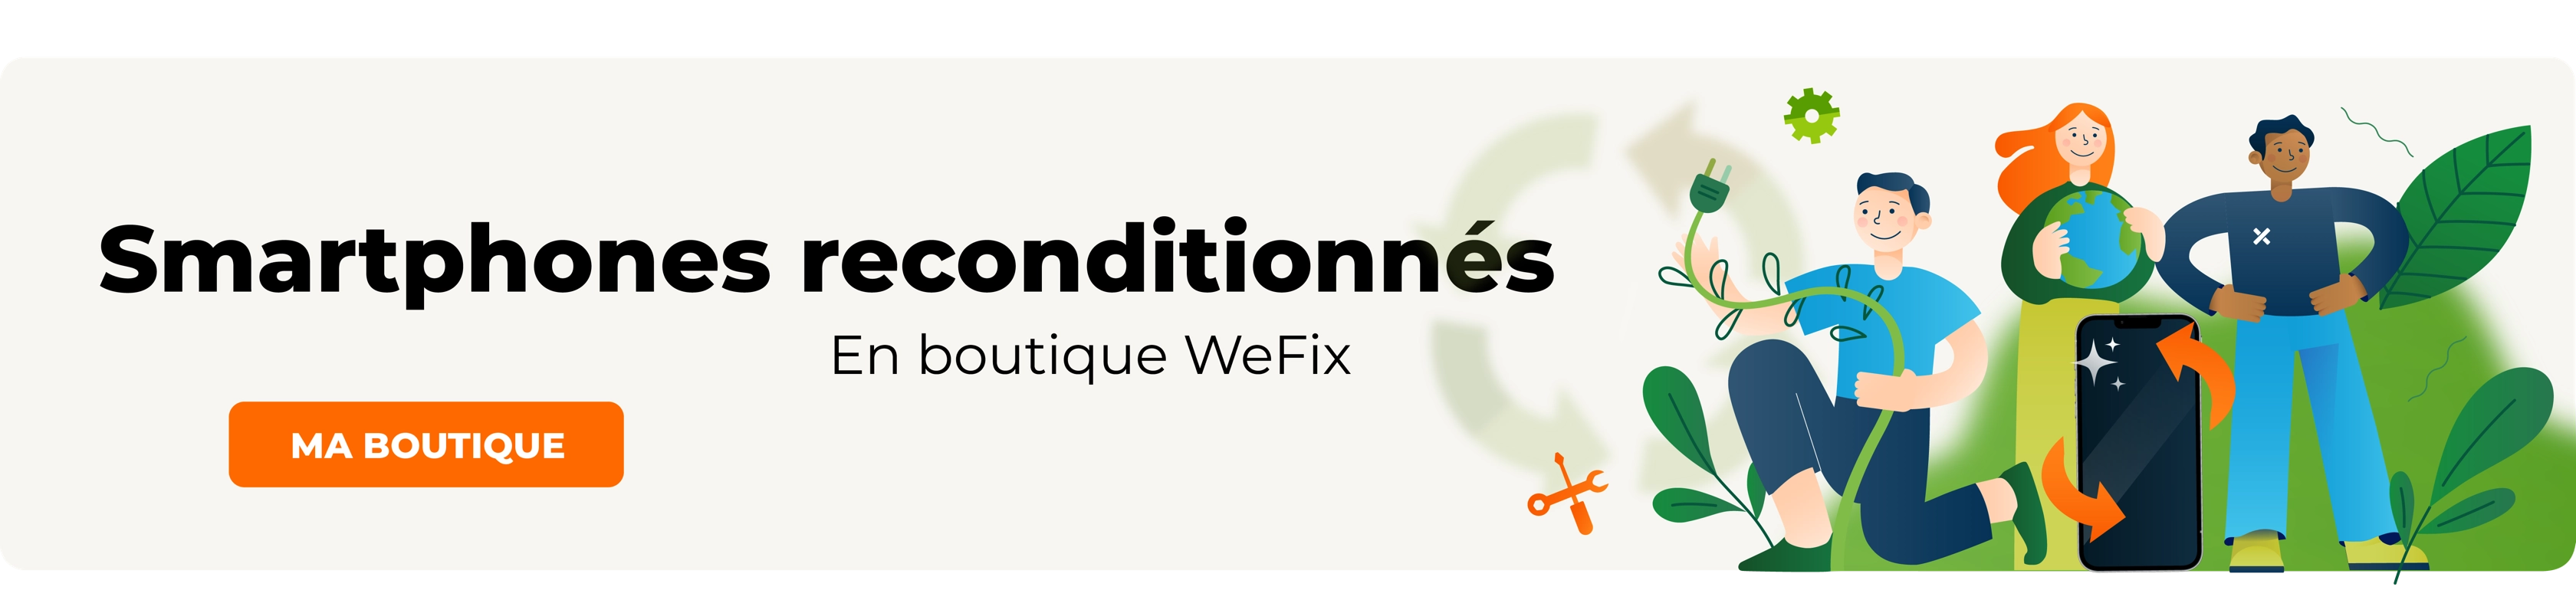 Découvrez les smartphones reconditionnés by WeFix !